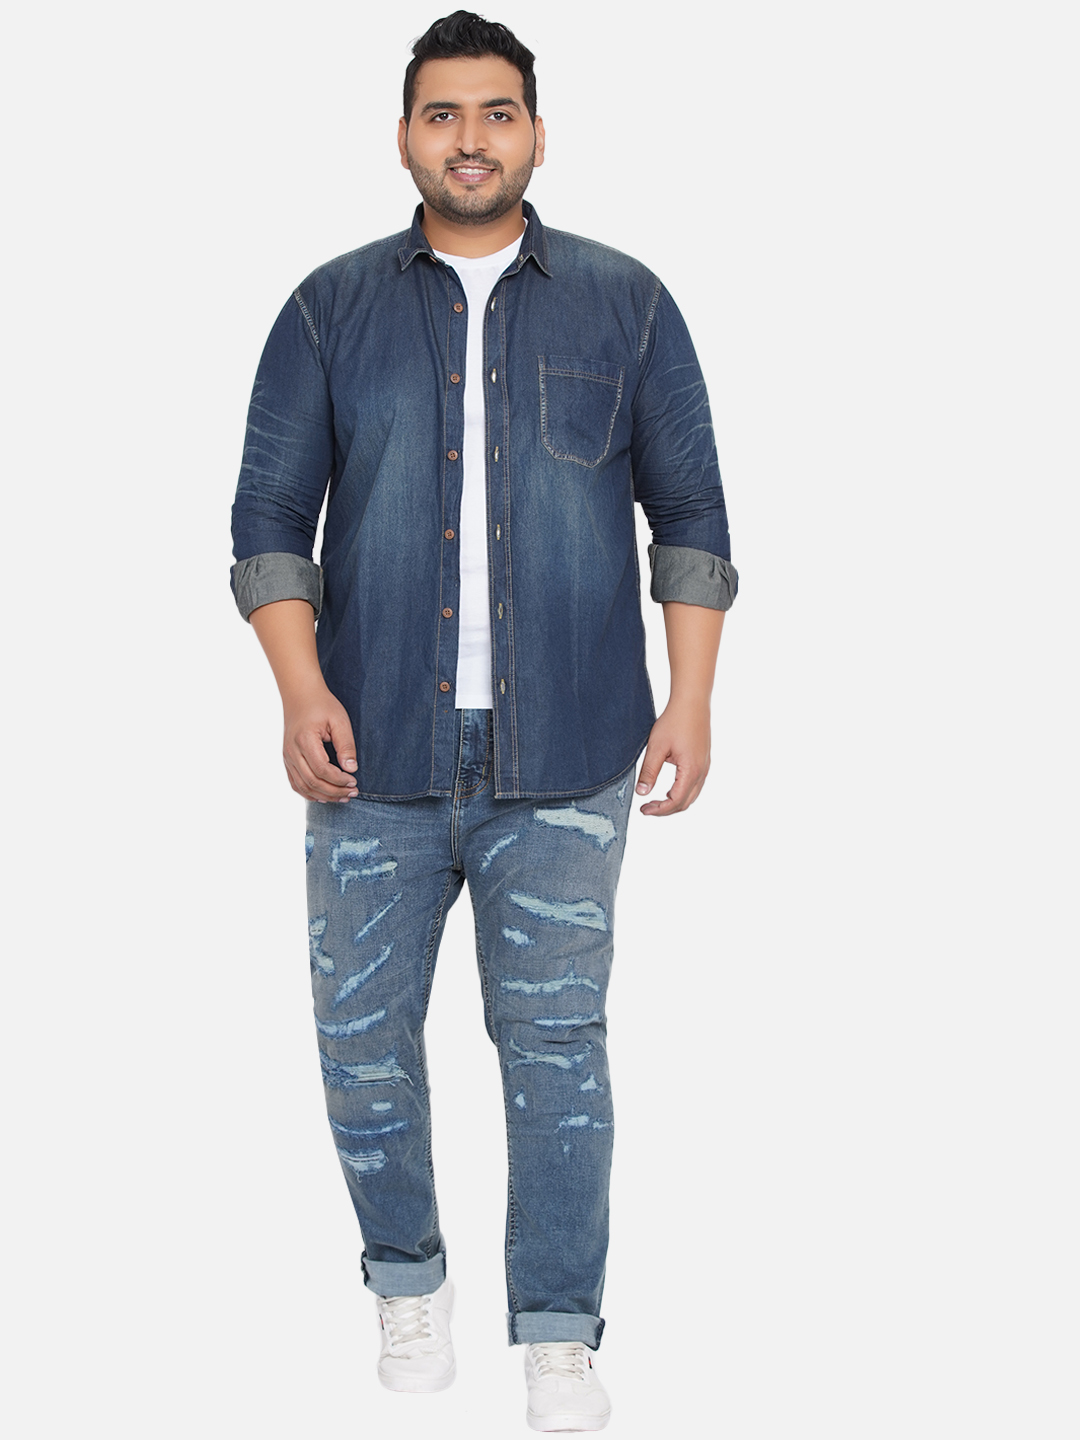 bottomwear/jeans/JPJ12201/jpj12201-2.jpg